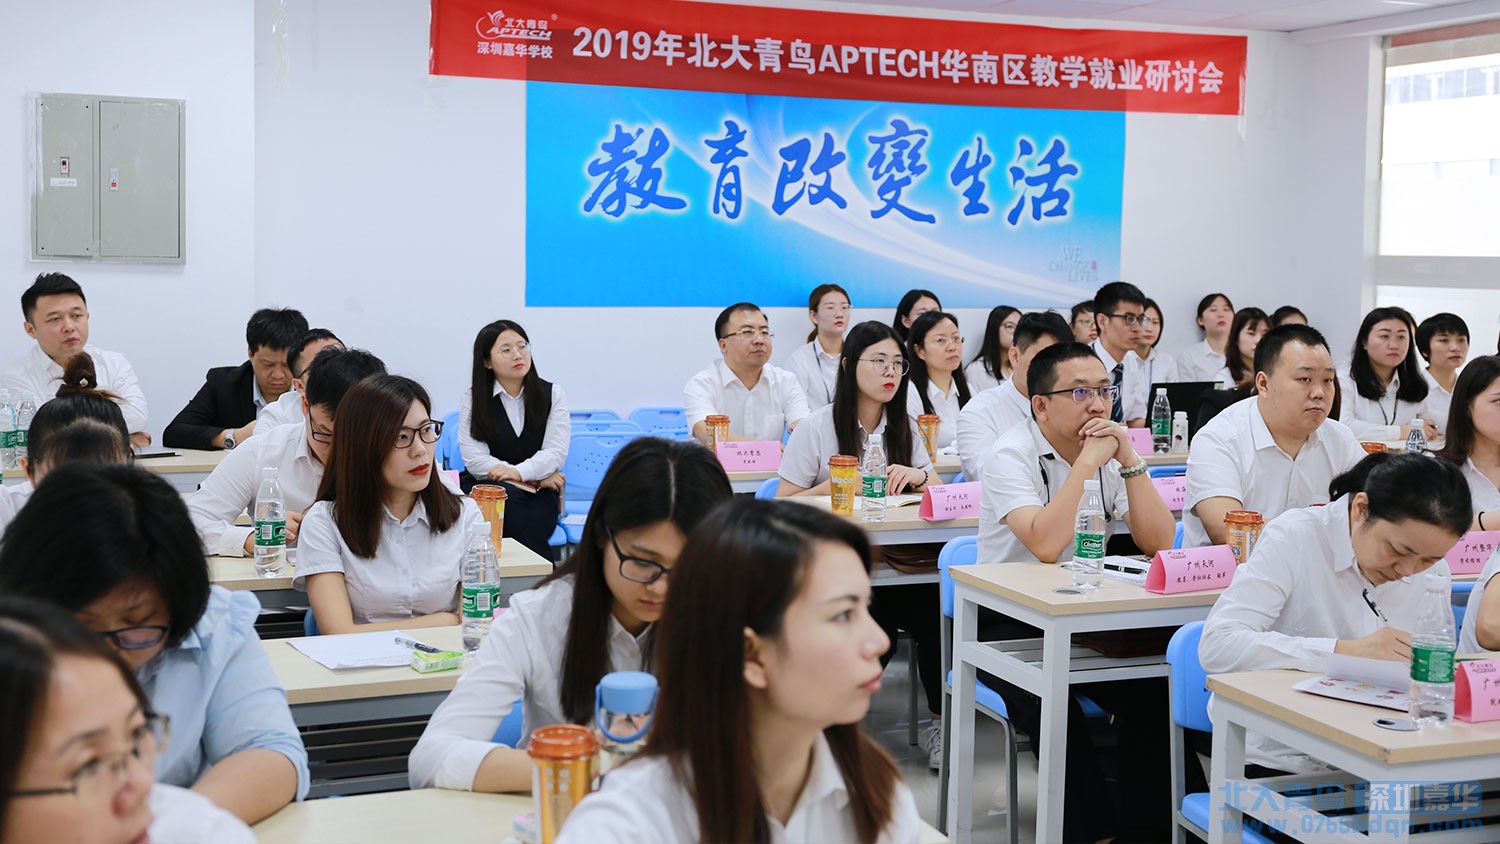 嘉华教育集团承办北大青鸟APTECH 2019年第二季度华南区教学就业区域研讨会